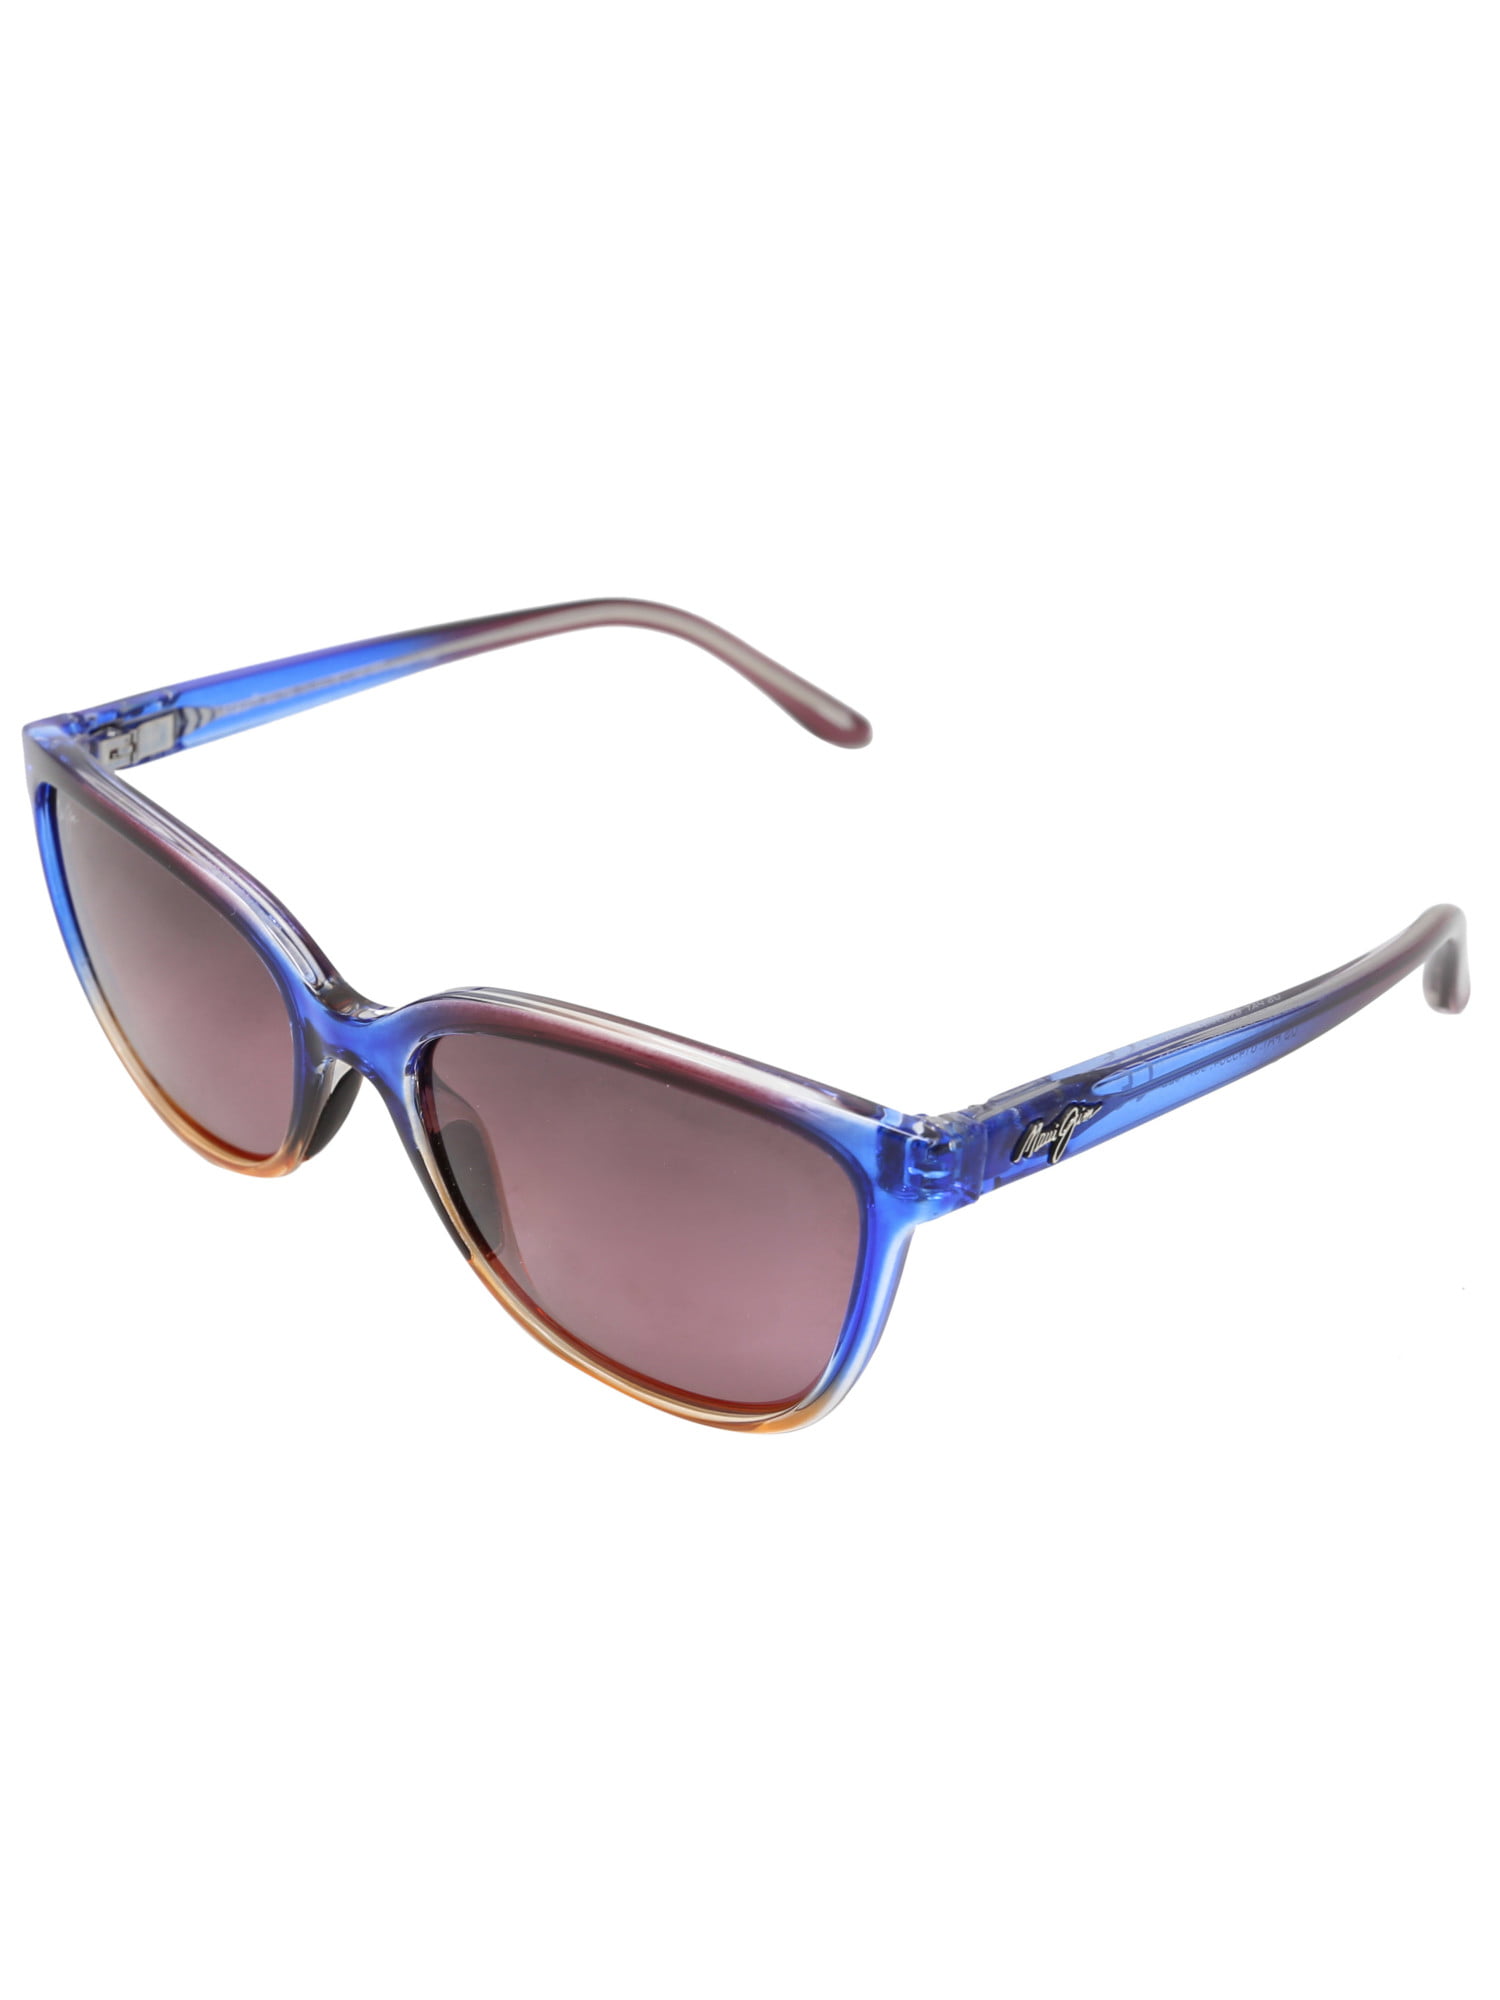 Maui Jim - Maui Jim Women's Honi Polarized Sunglasses - Walmart.com ...